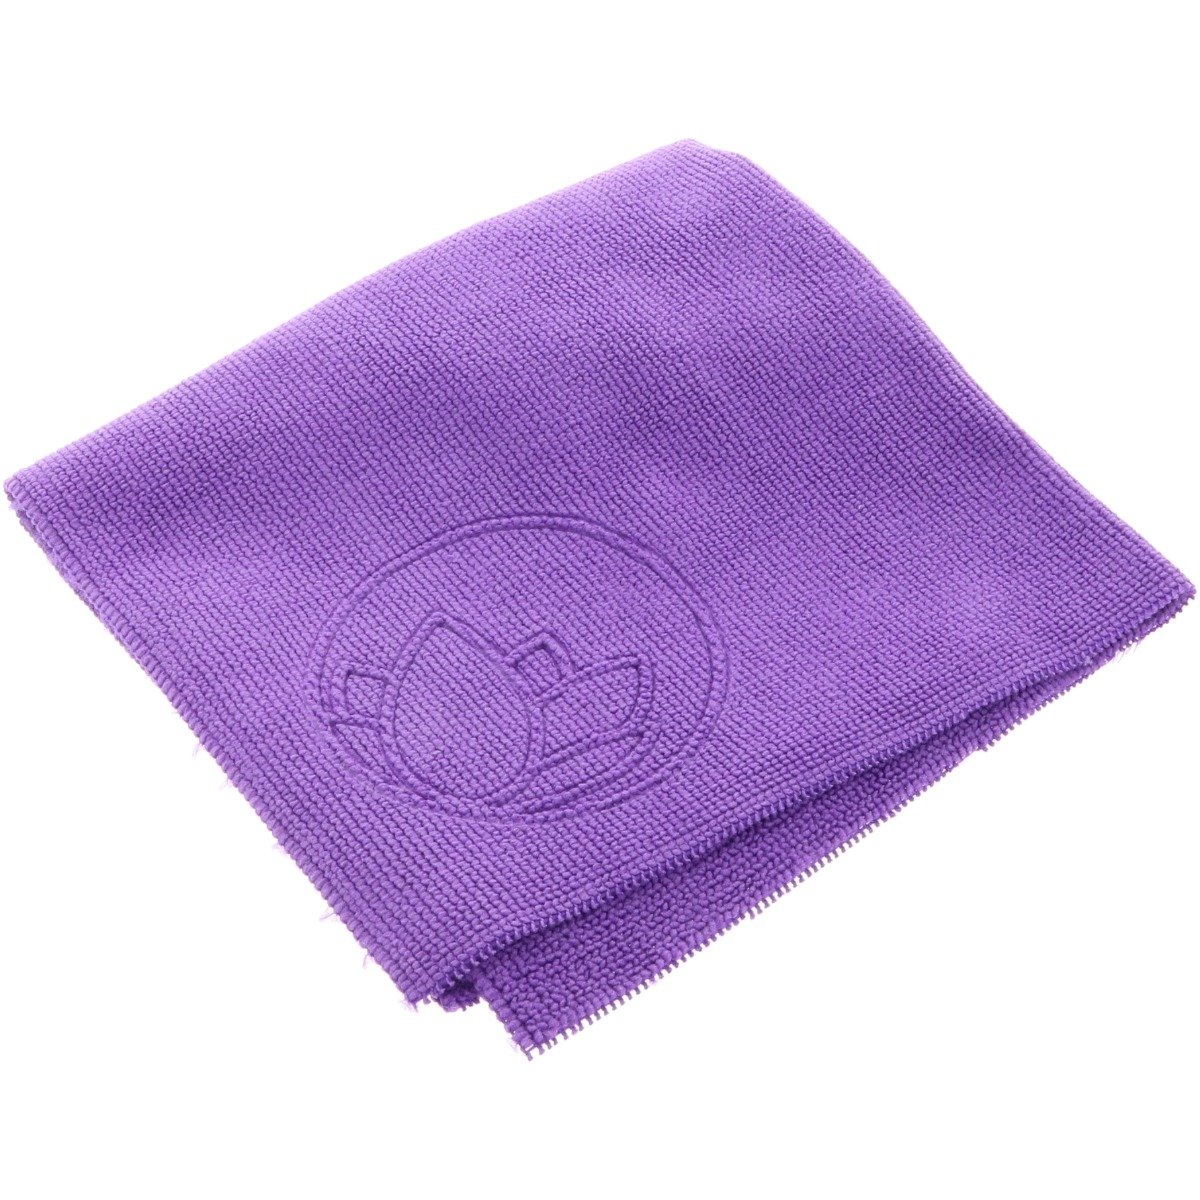 Lotus Microfiber Towel - 40x40cm